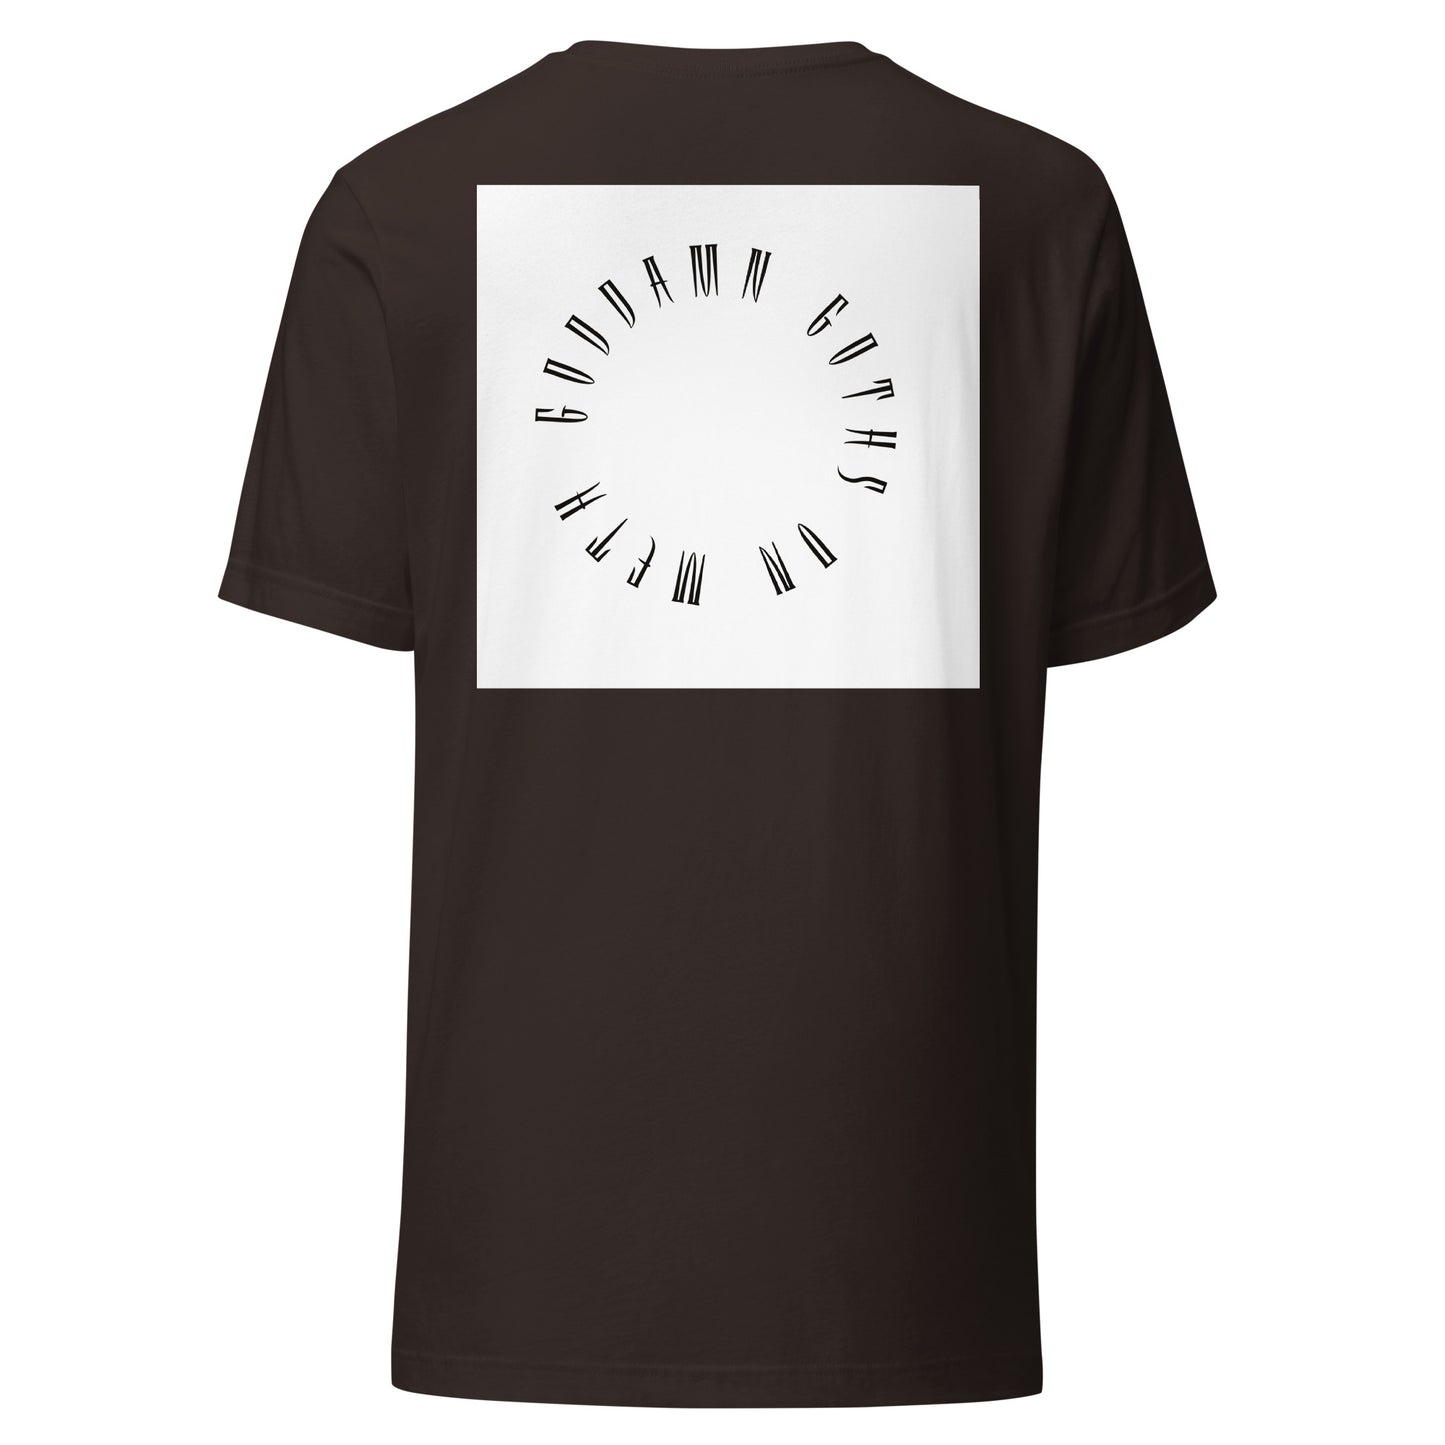 GOAT GUTS (GLORY GOAT HOLE MIX) - Unisex t-shirt